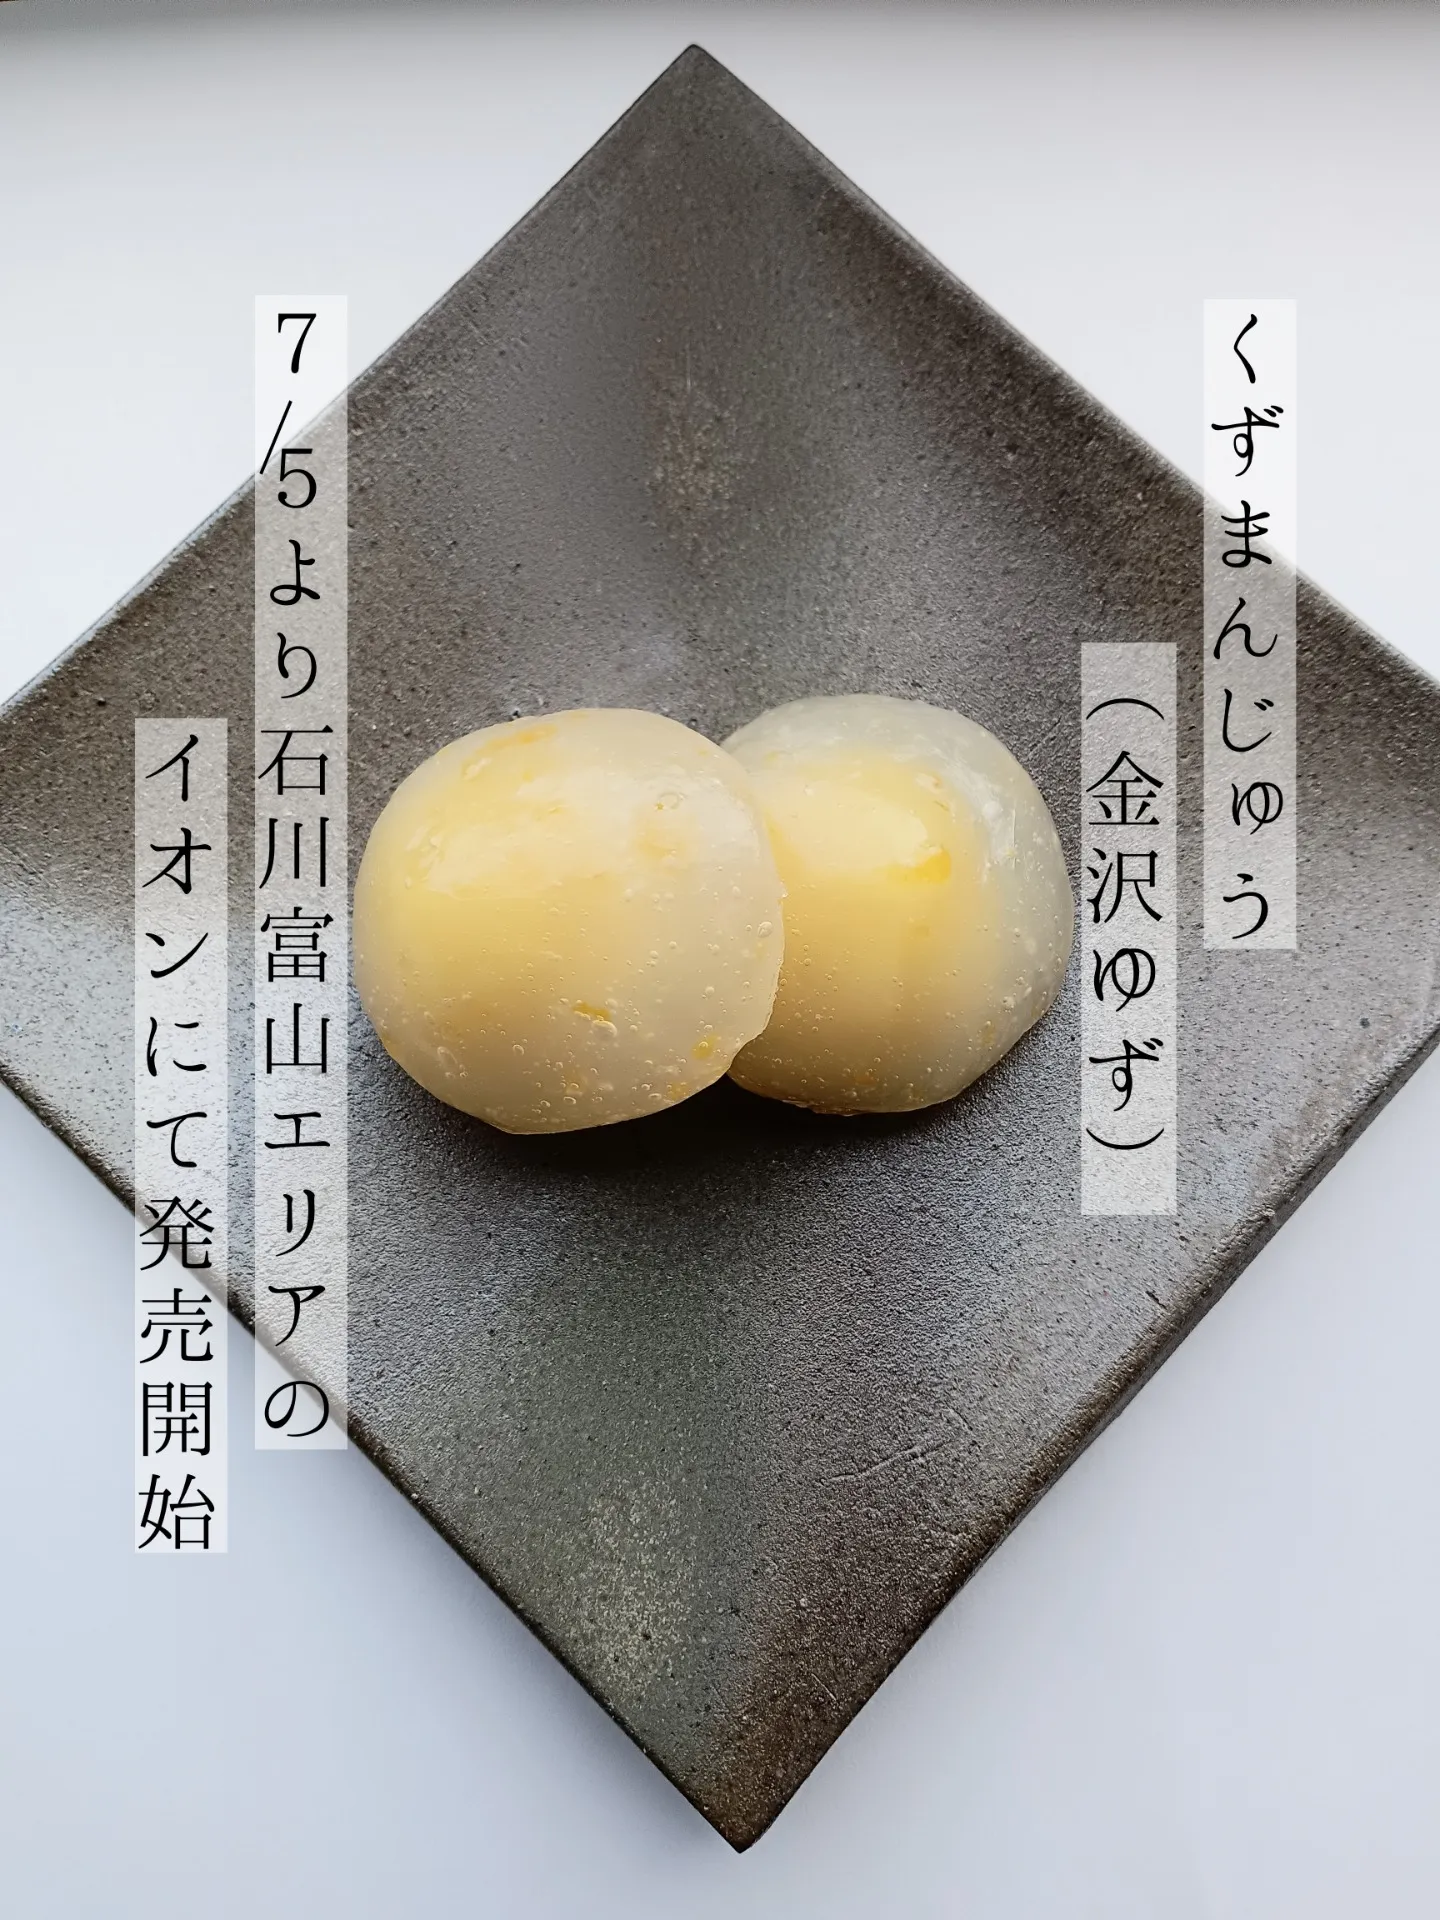 金沢ゆず羽二重餅、くずまんじゅう（金沢ゆず）を石川富山イオンで販売